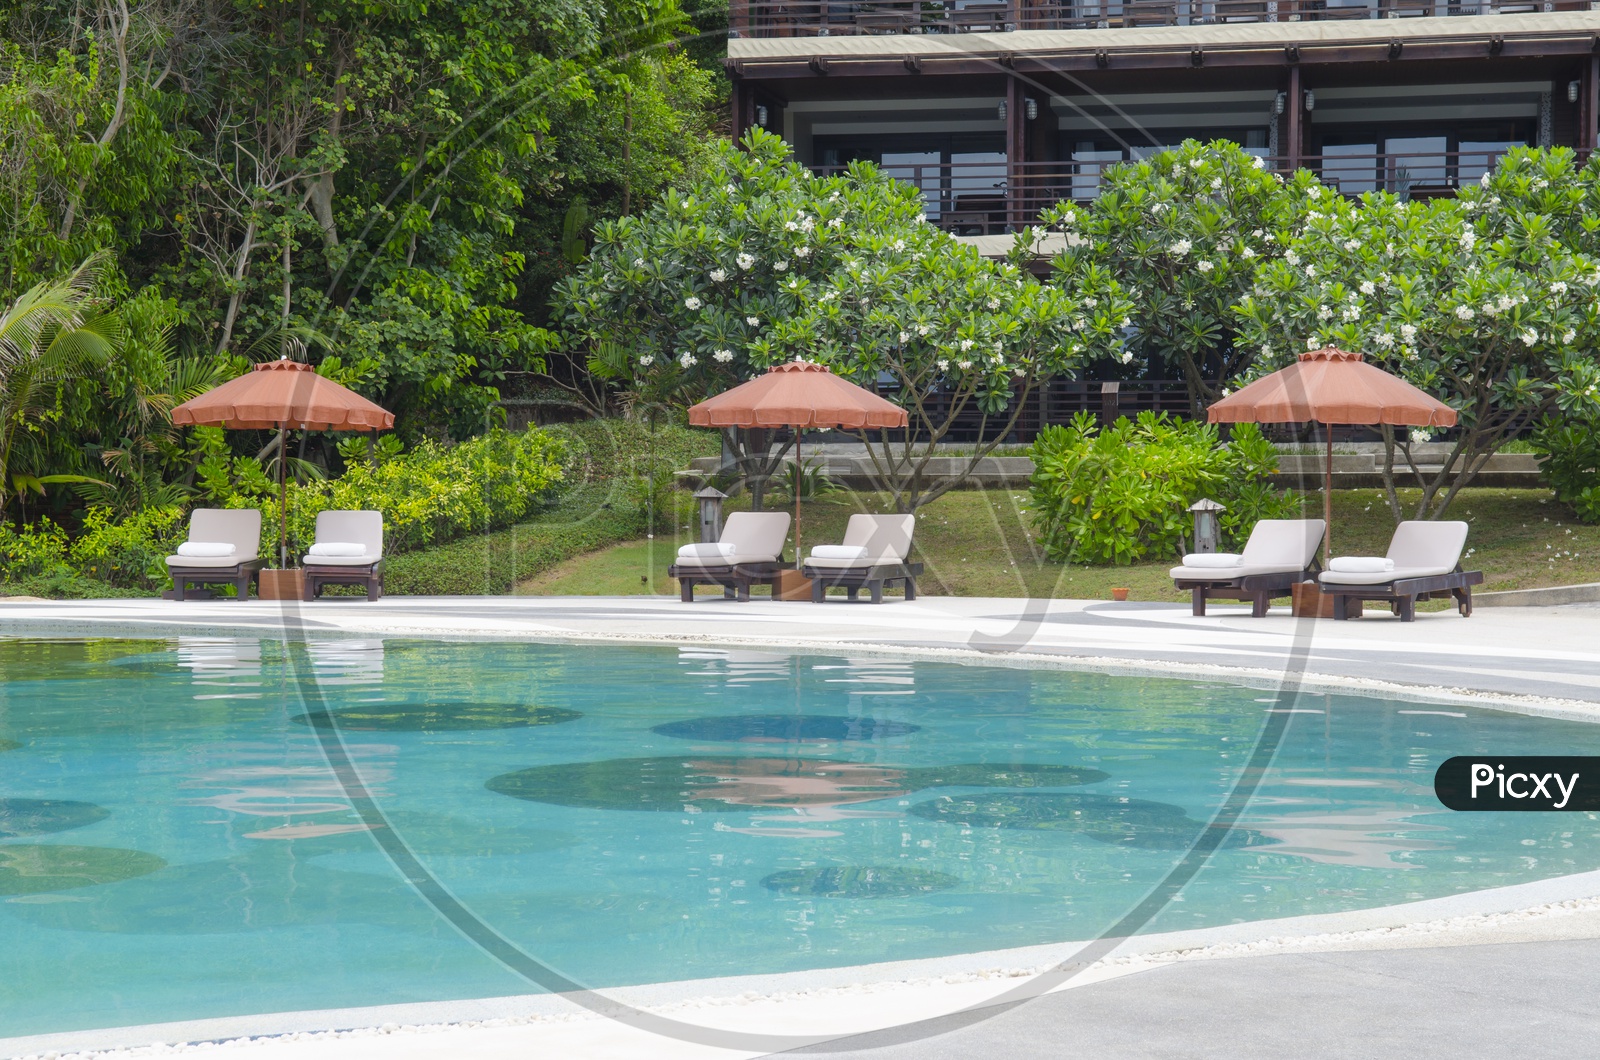 A Swimming pool in Thai Resort